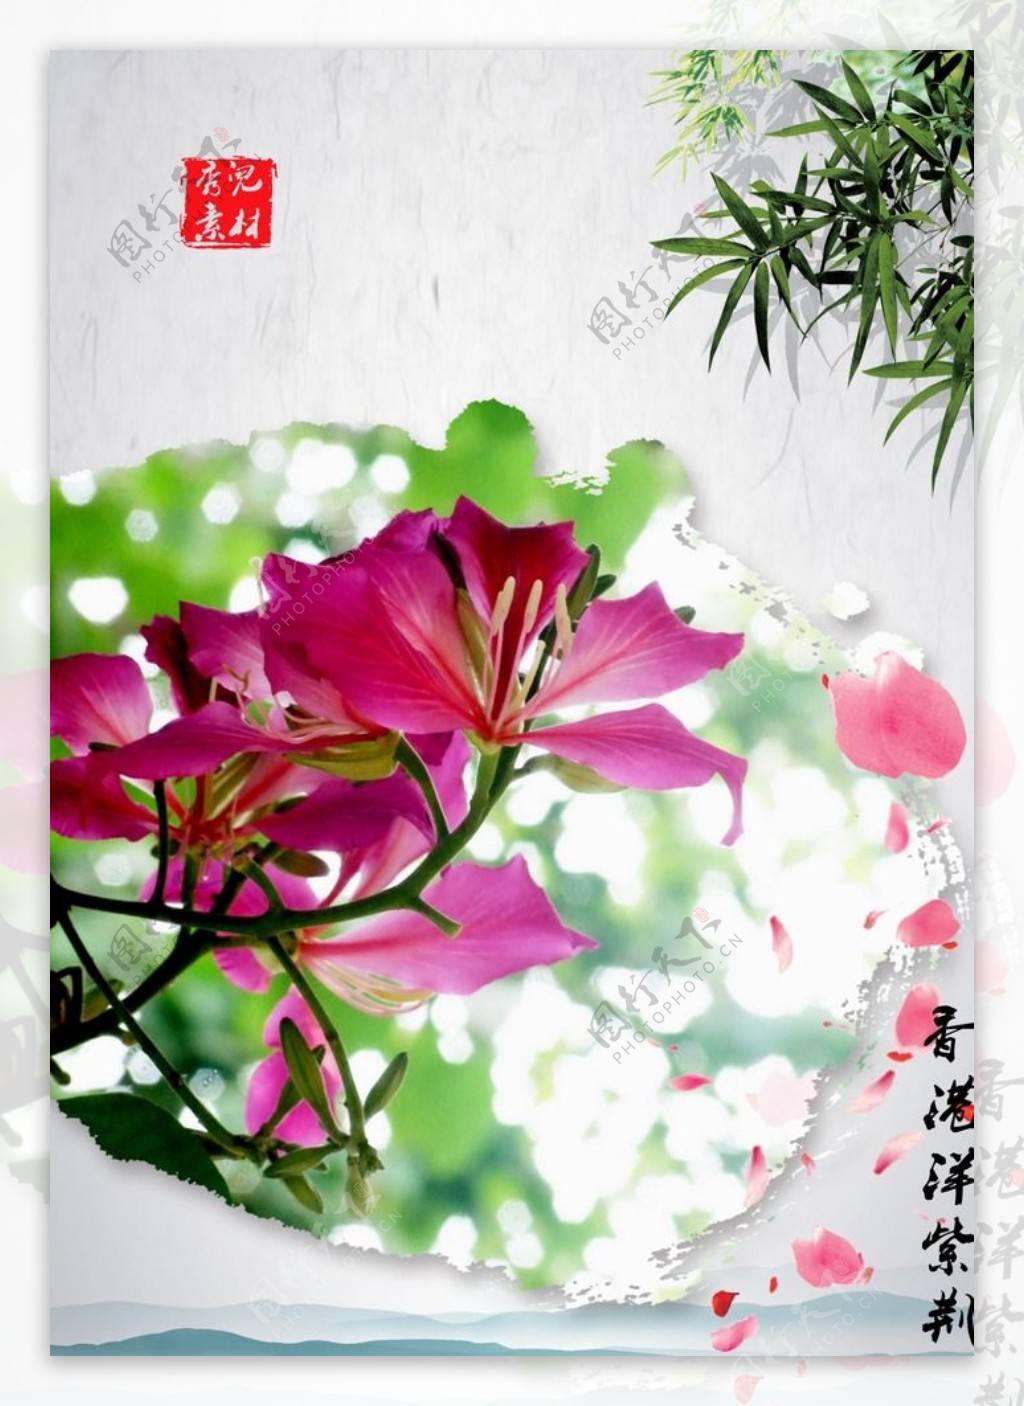 香港盛开的花-----红花羊蹄甲-园艺资讯-广州景采园林绿化工程有限公司-广州绿植租摆-广州绿化养护-广州花卉租赁